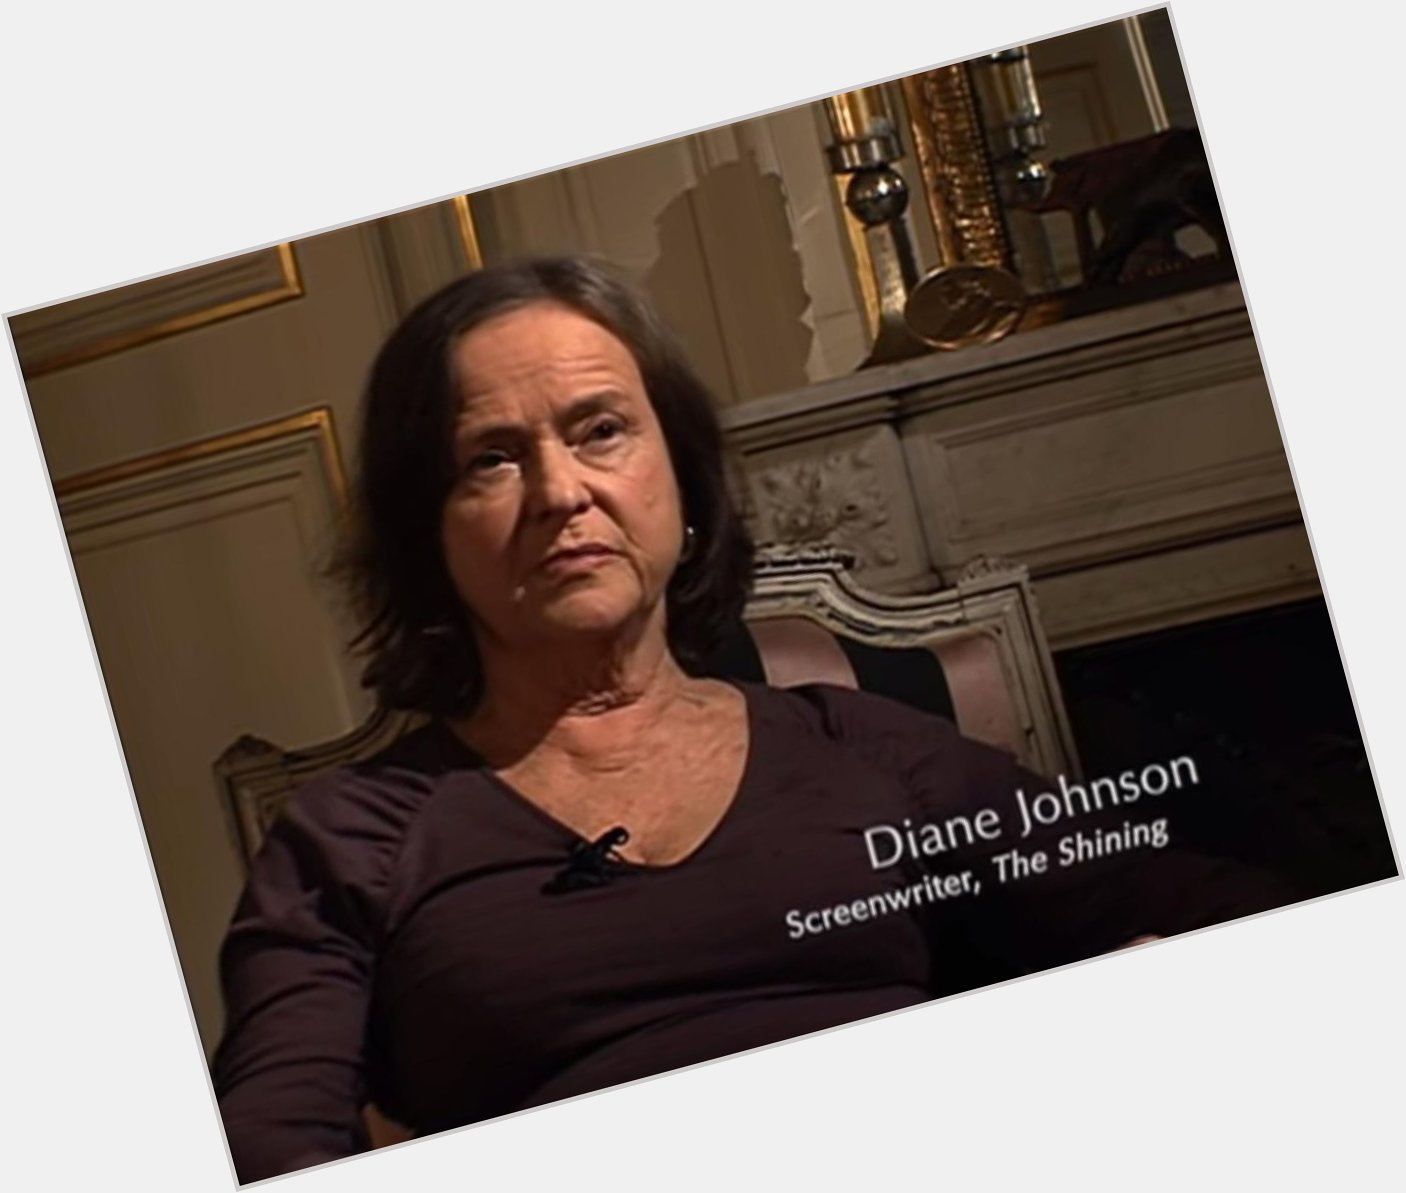 Happy Birthday to Diane Johnson, screenwriter of The Shining! 